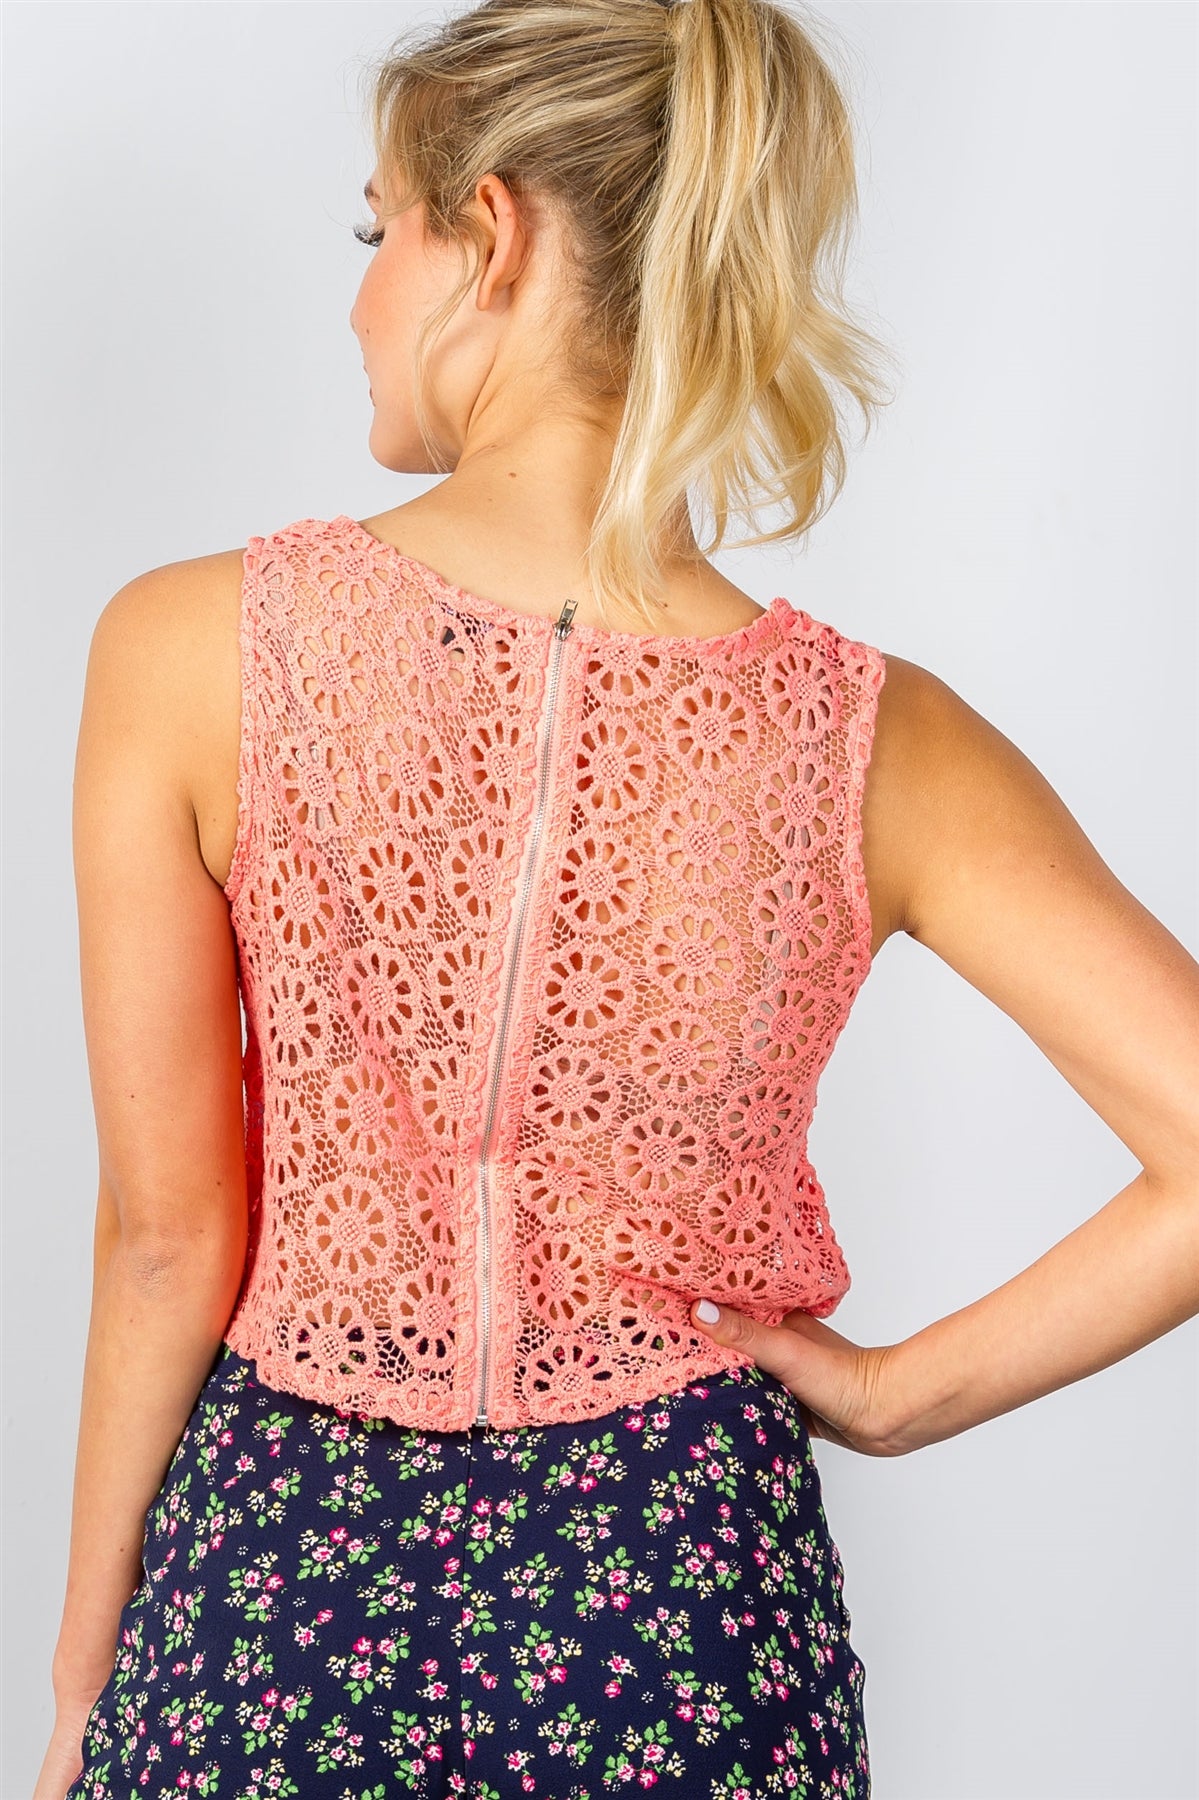 Ladies fashion floral crochet lace crop top